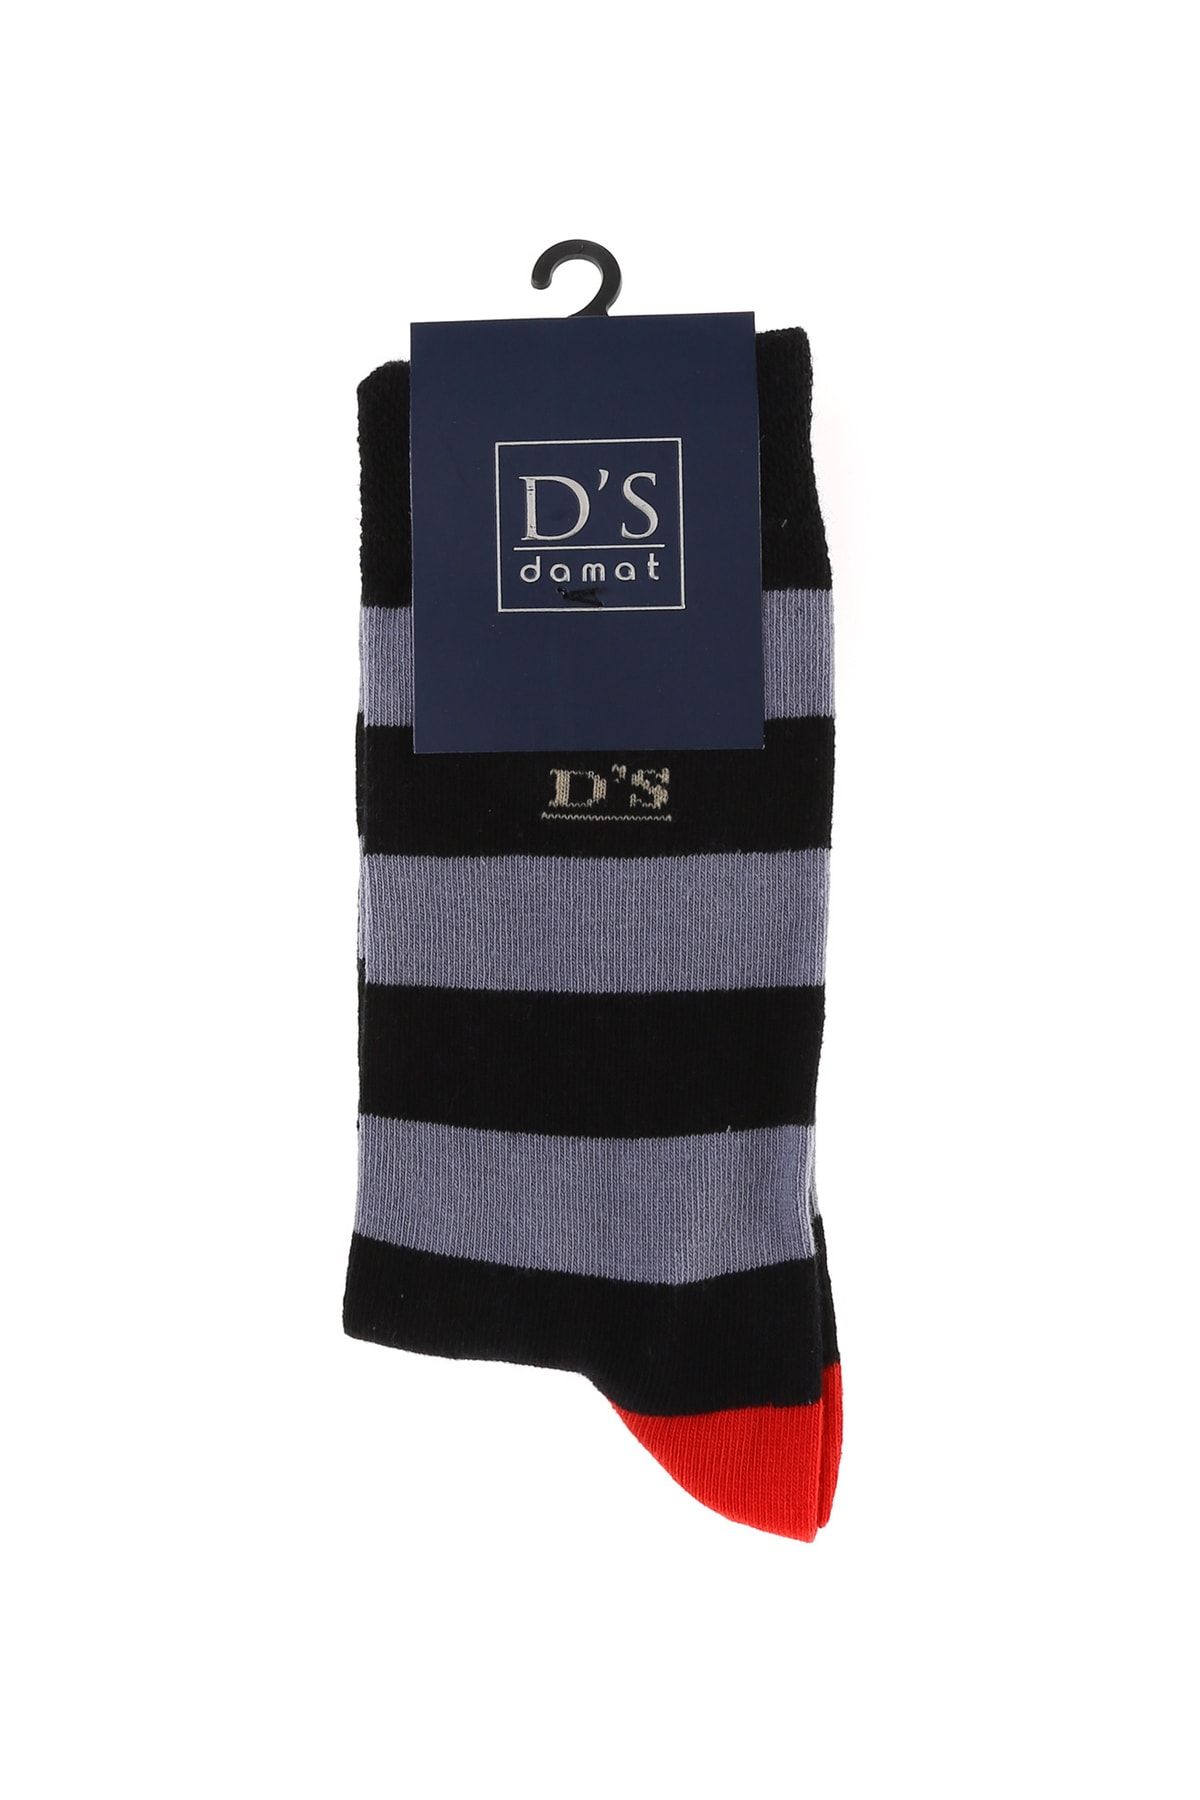 D'S Damat Erkek Pamuk Çorap Çemberli Siyah Erkek Desenli Çorap